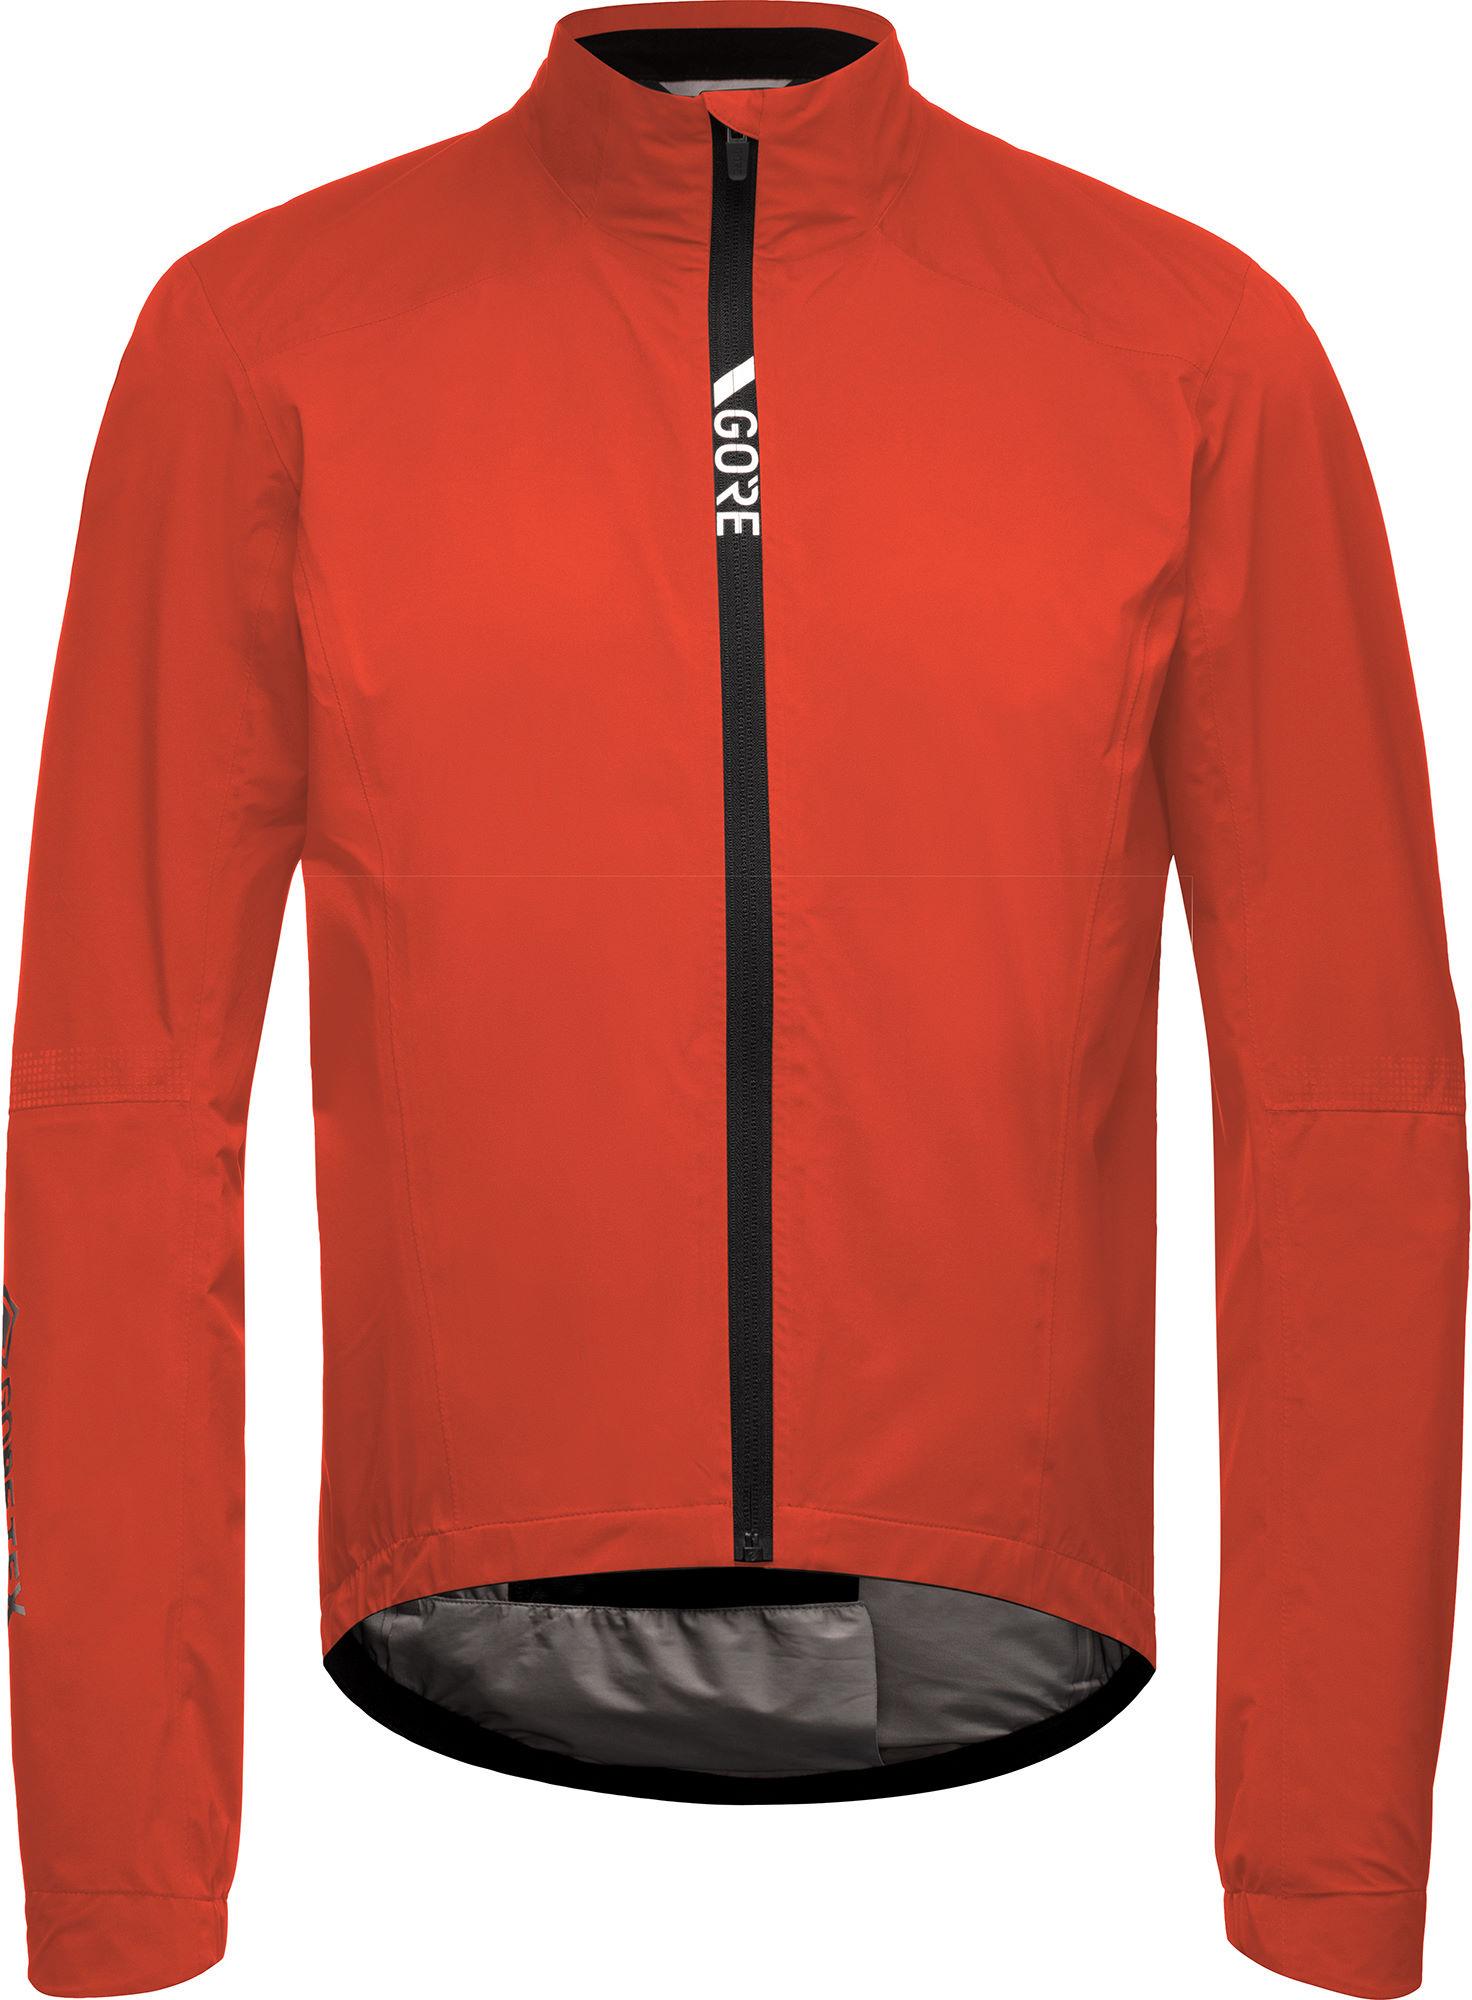 Gorewear Torrent Cycling Jacket  Fireball